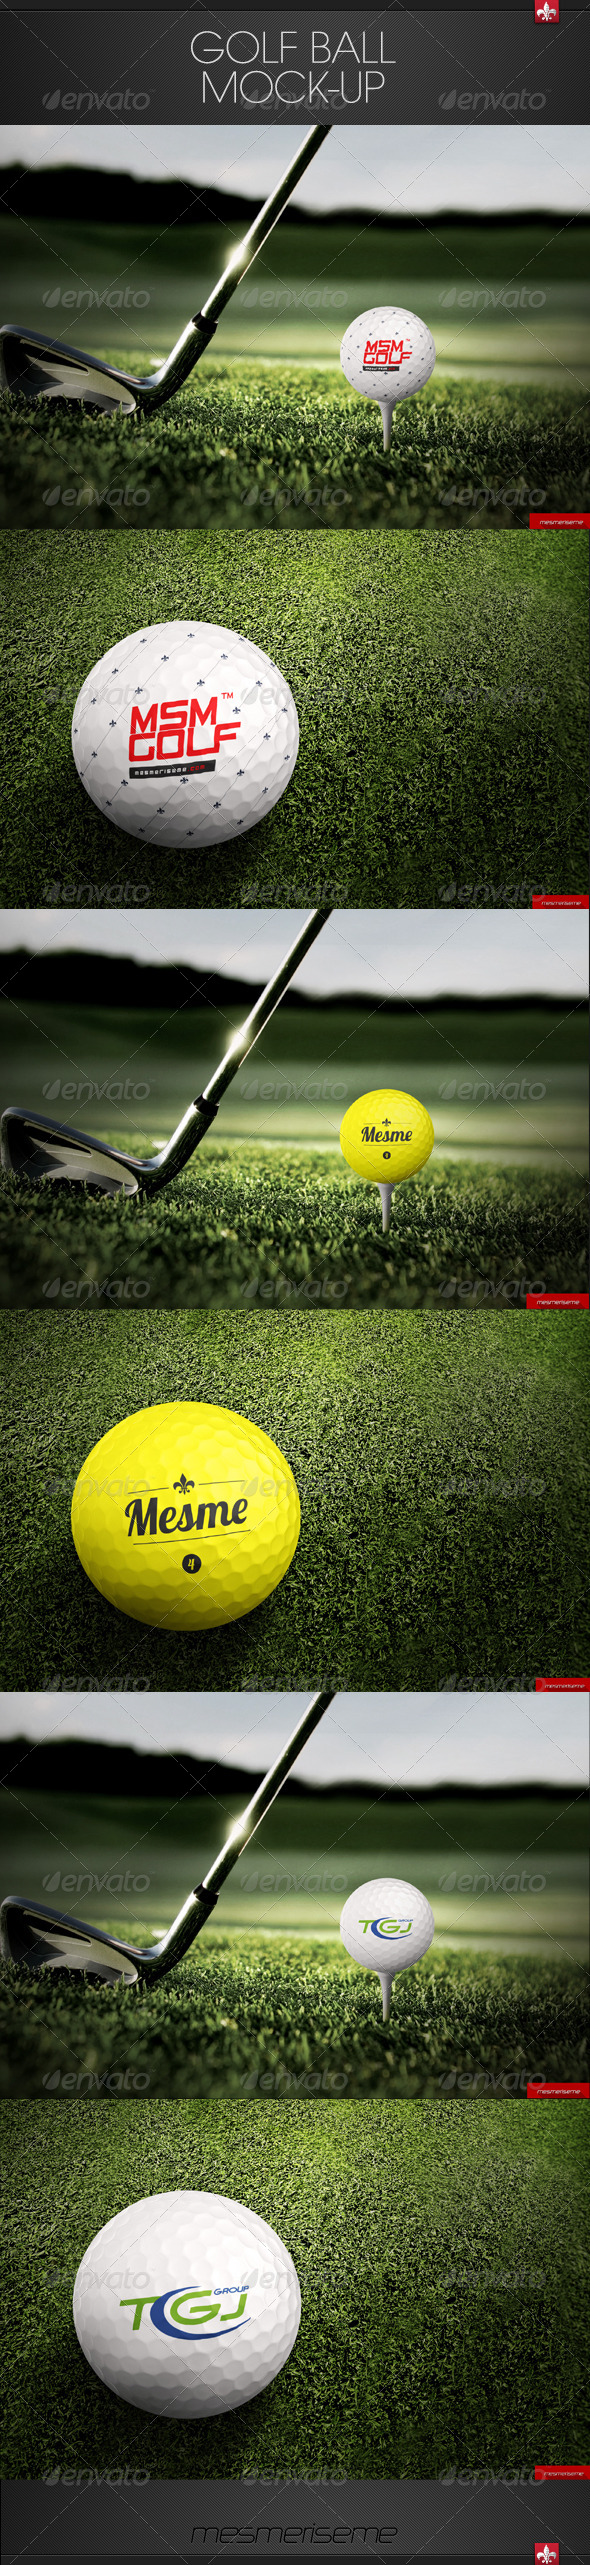 preview_golf ball.jpg